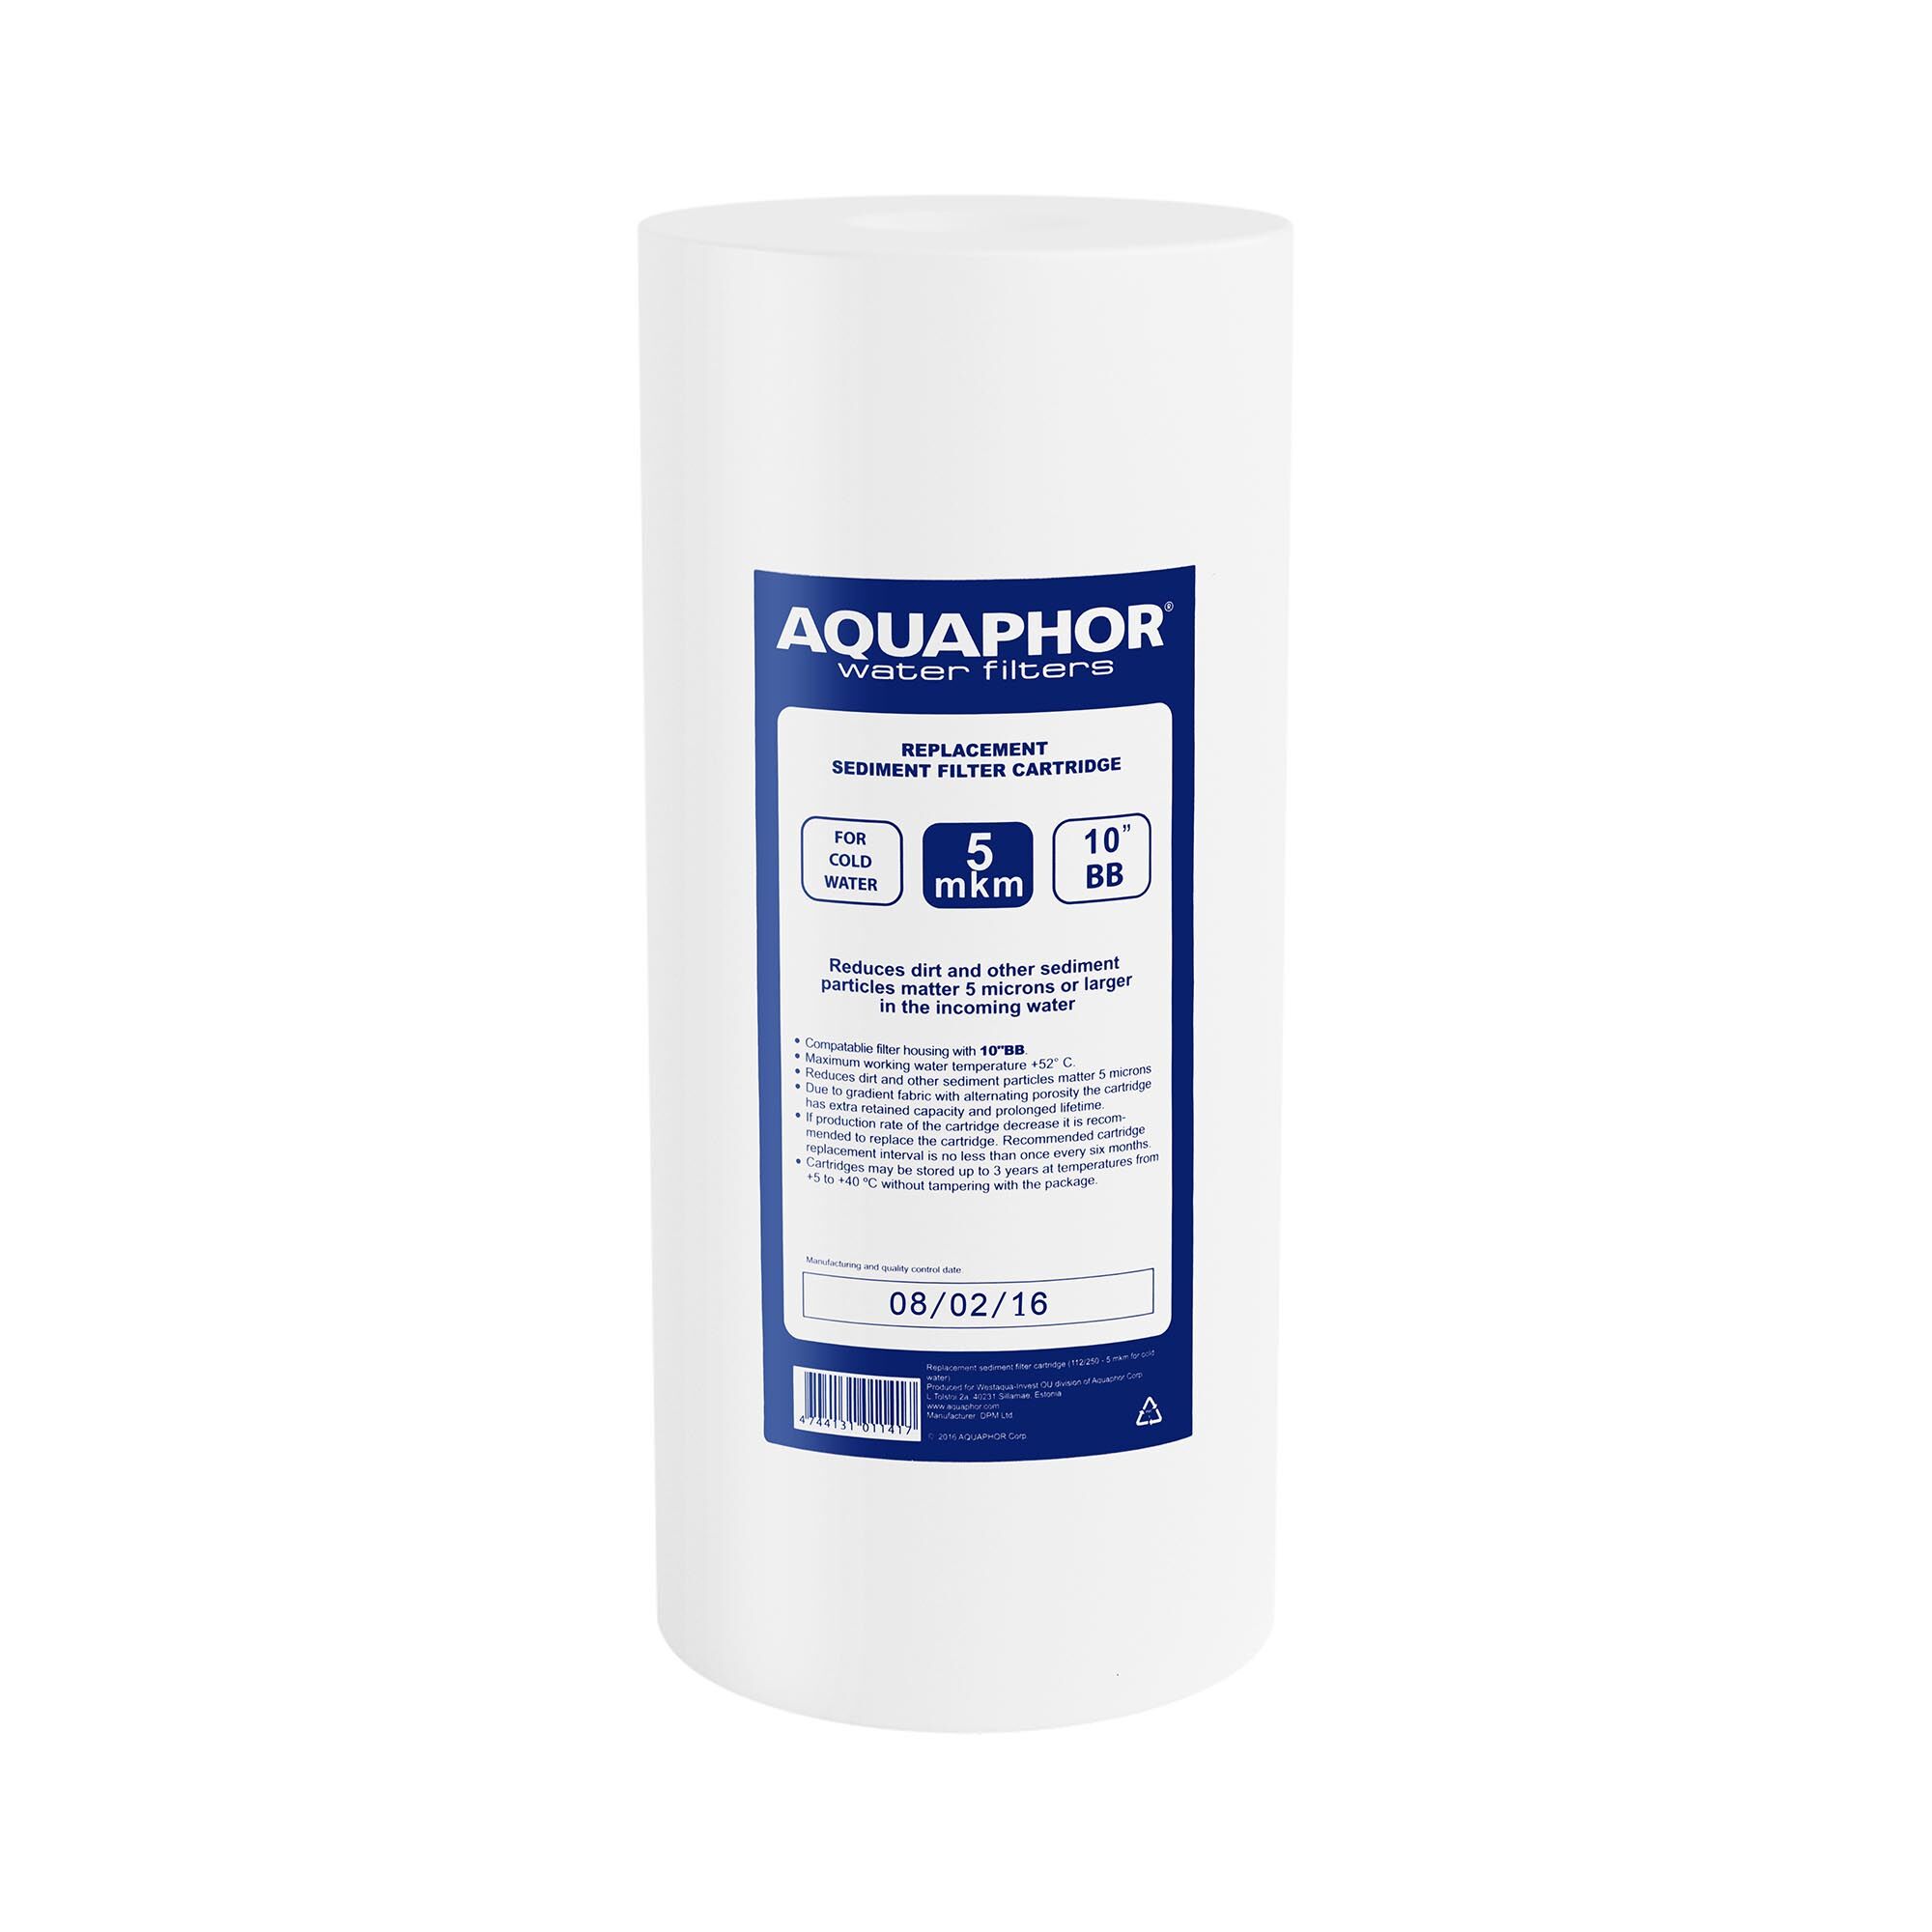 Aquaphor vodní filtr pro systém reverzní osmózy - 10" "10"" BB, 5 MICROM PP"